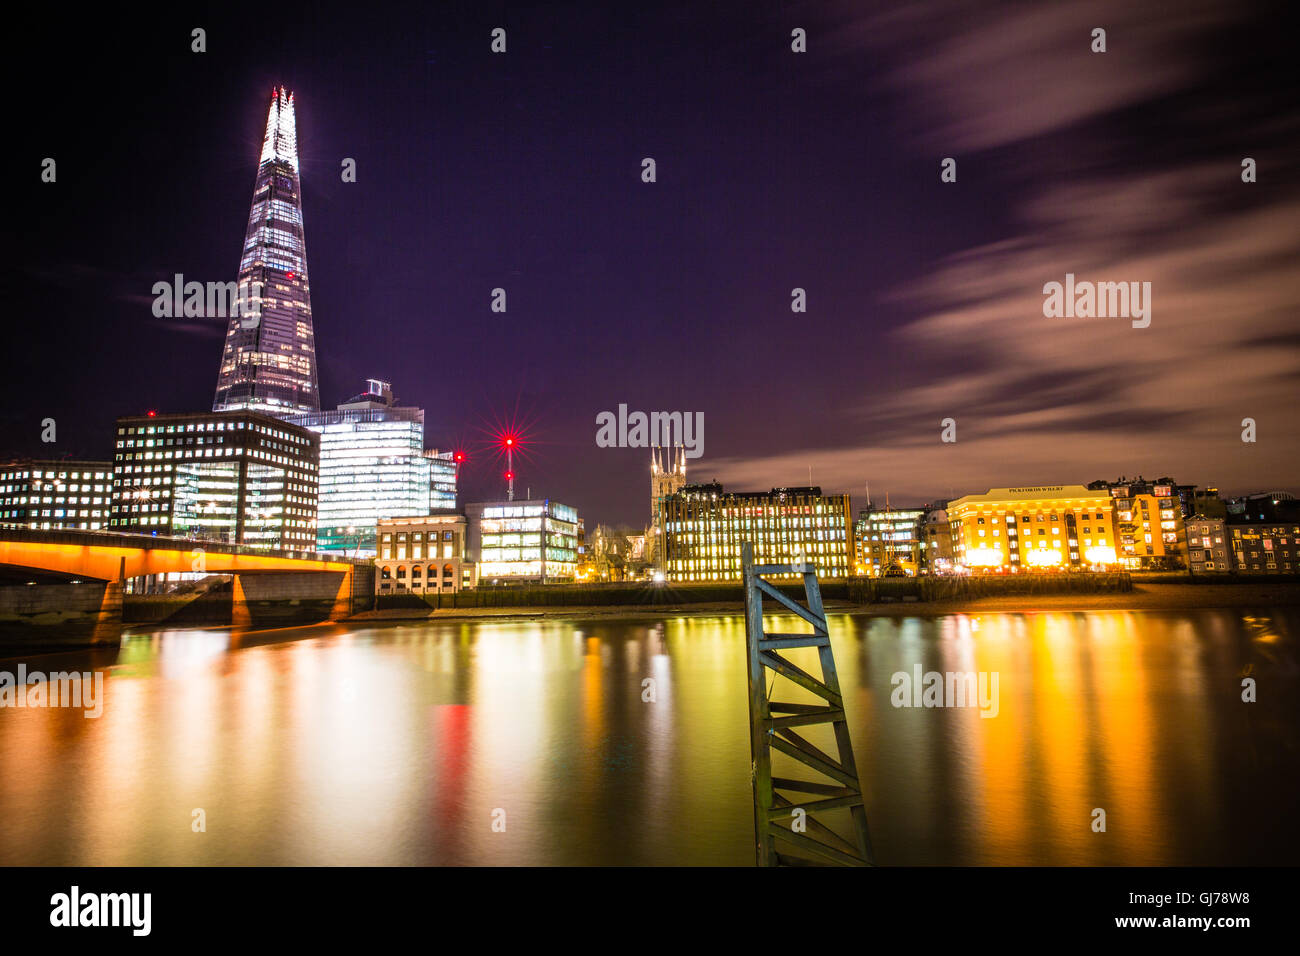 Vue depuis la rive sud de la Tamise de shard et autres bâtiments dans la soirée, Londres, Royaume-Uni. Banque D'Images